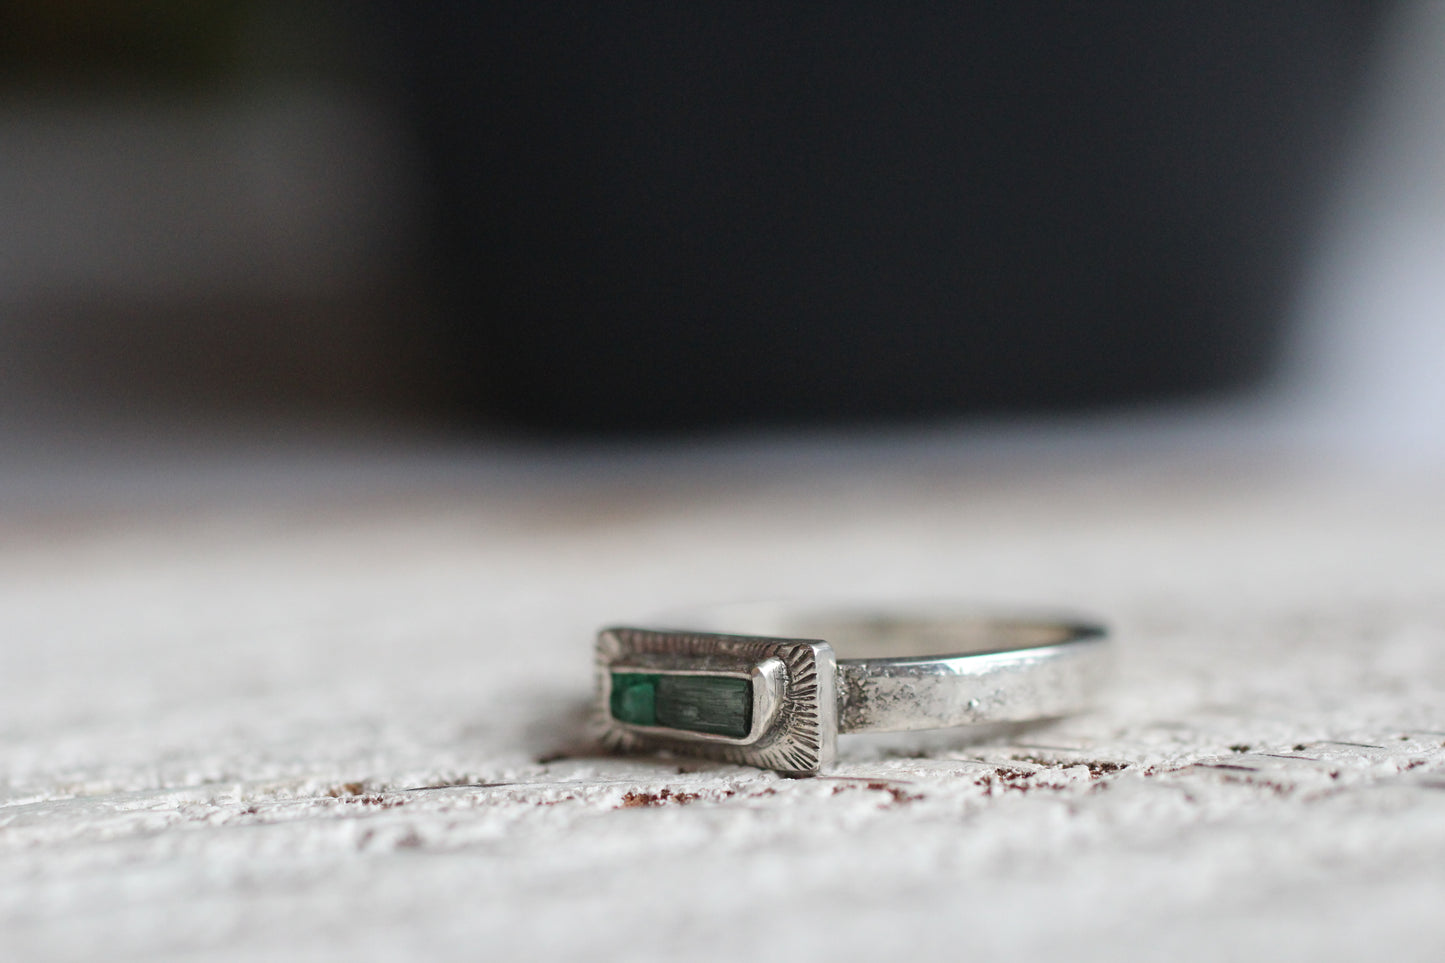 Emerald & Aquamarine Ring